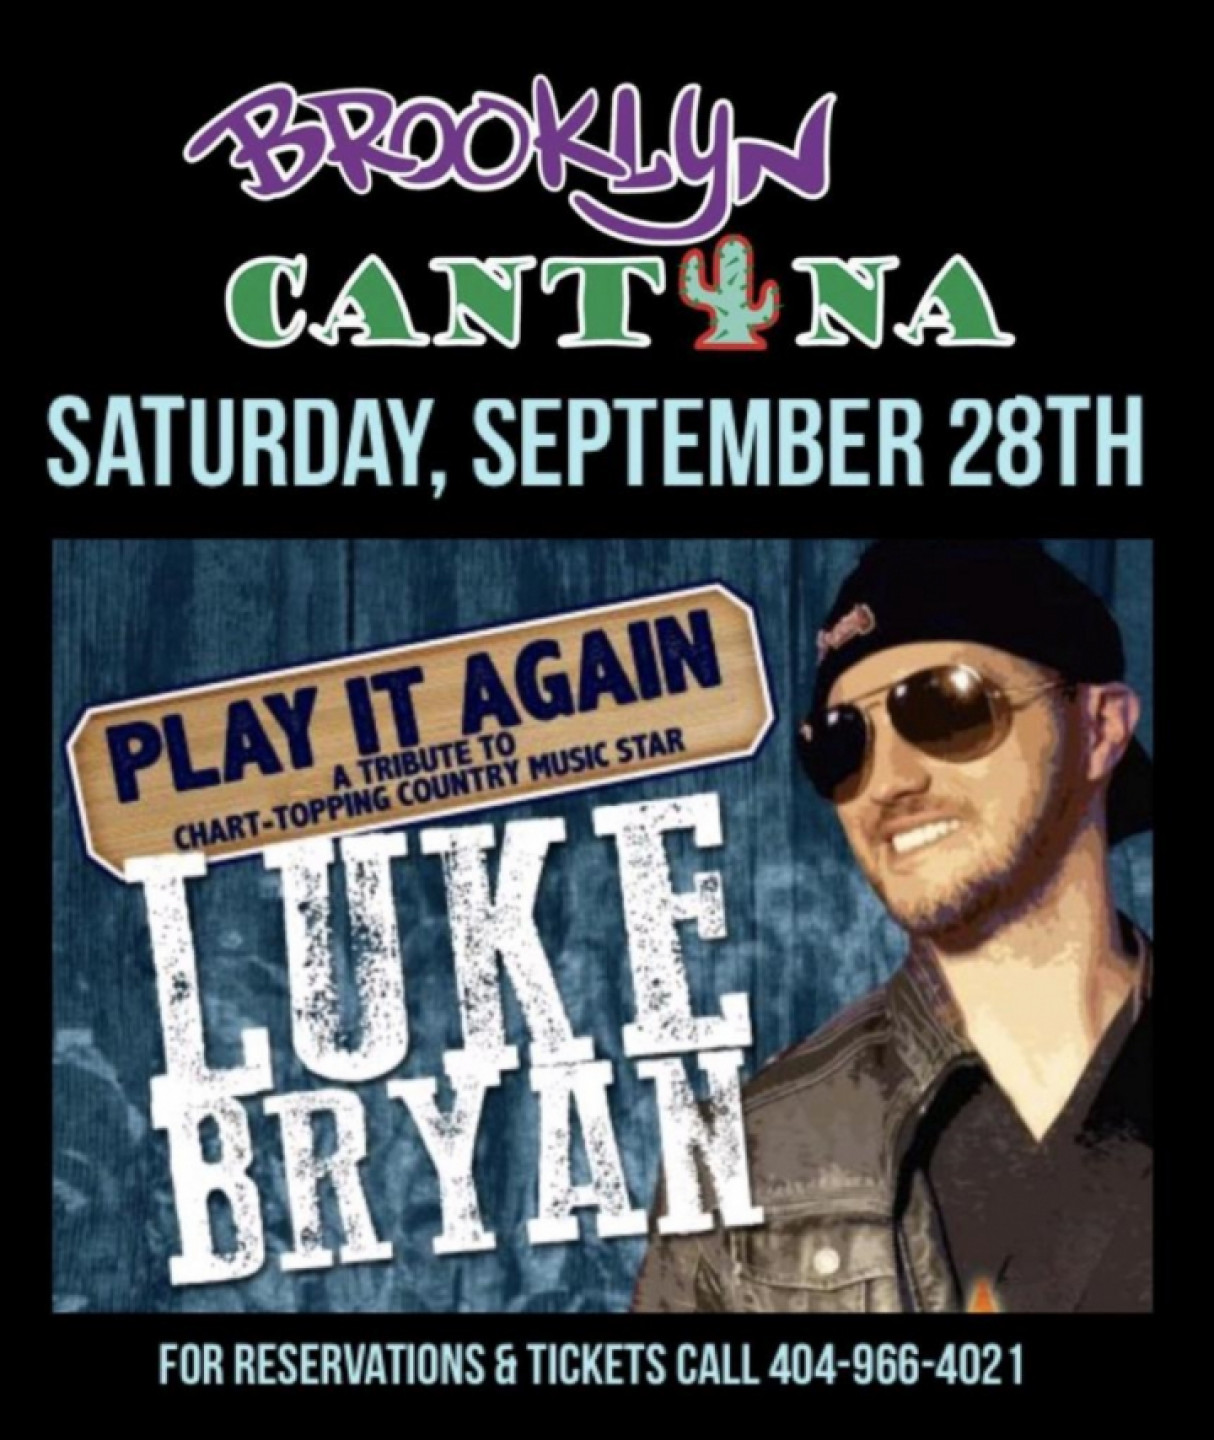 Play It Again, Luke Bryan Tribute, Saturday, September 28th